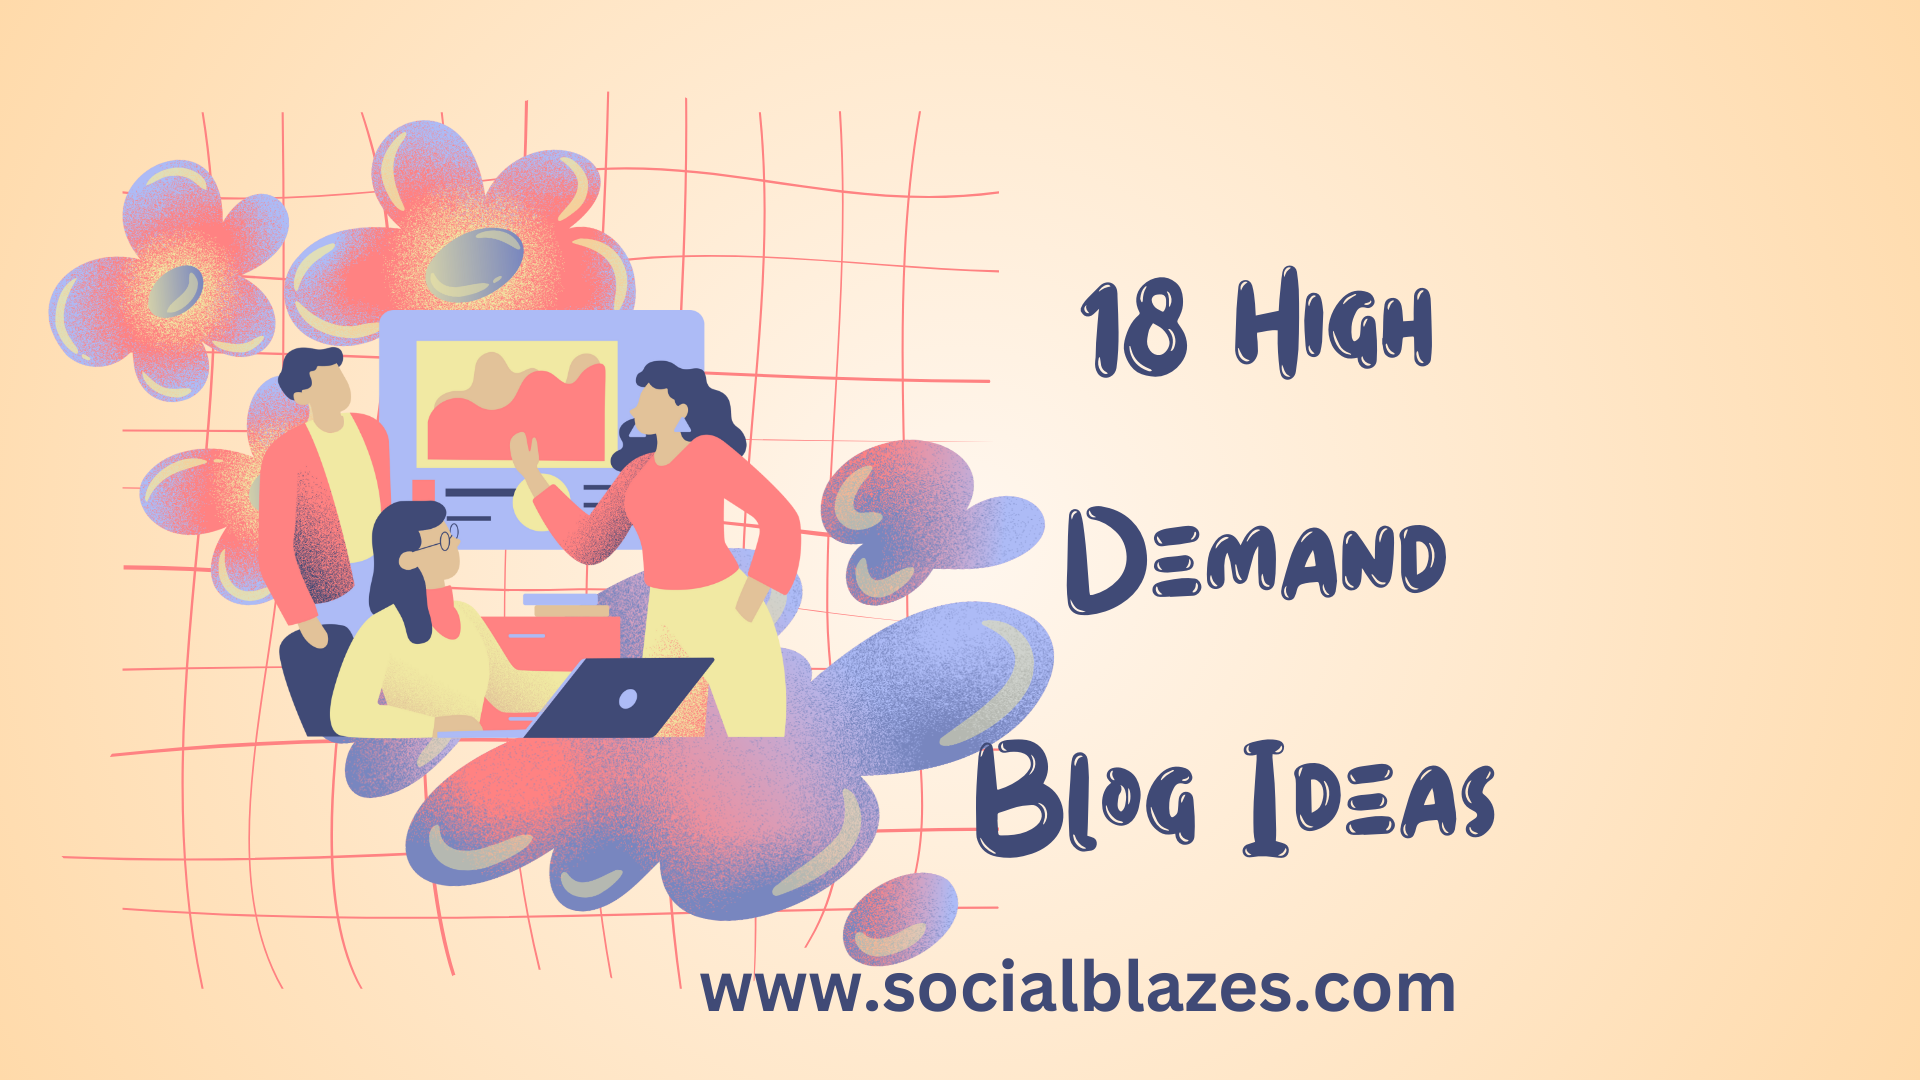 high demand blog topics